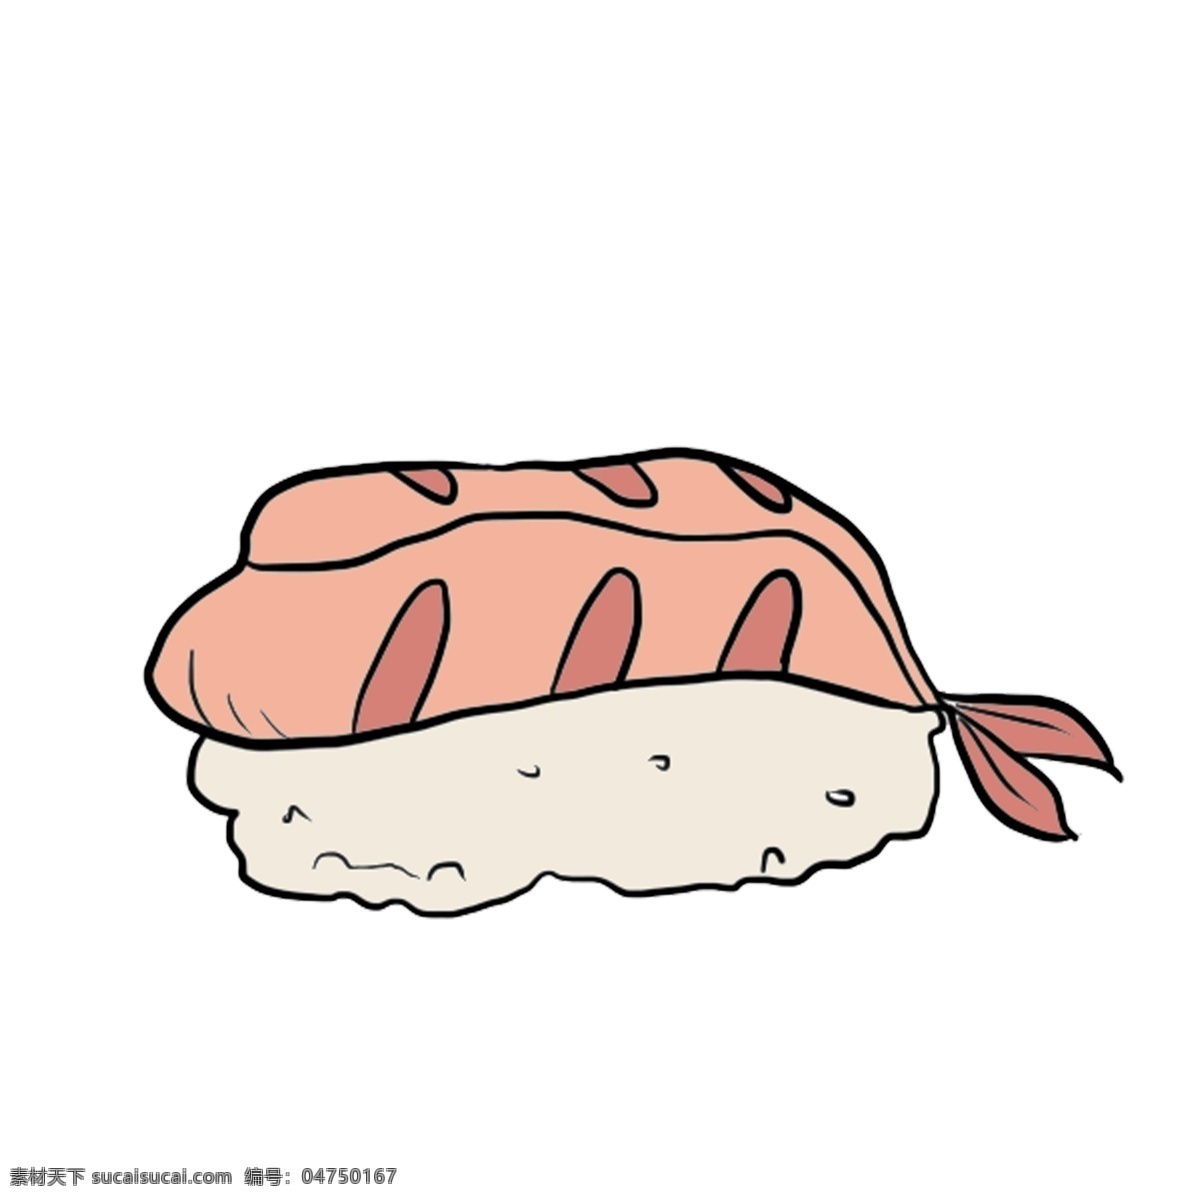 日本 三文鱼 料理 插画 日本寿司 一块寿司 三文鱼料理 寿司插图 三文鱼寿司 日式寿司